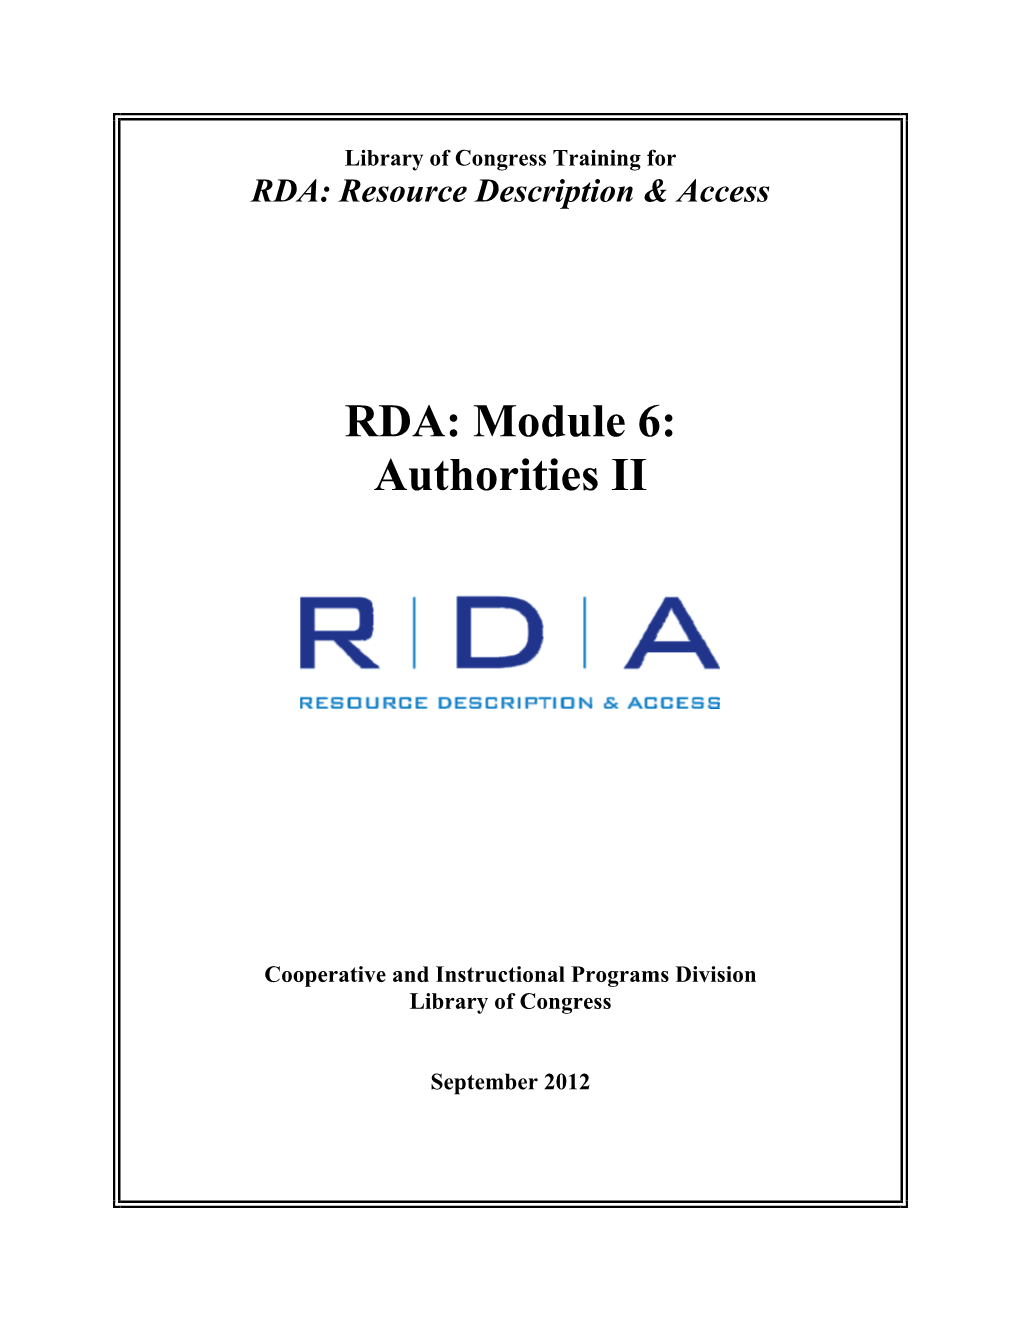 RDA: Module 6: Authorities II